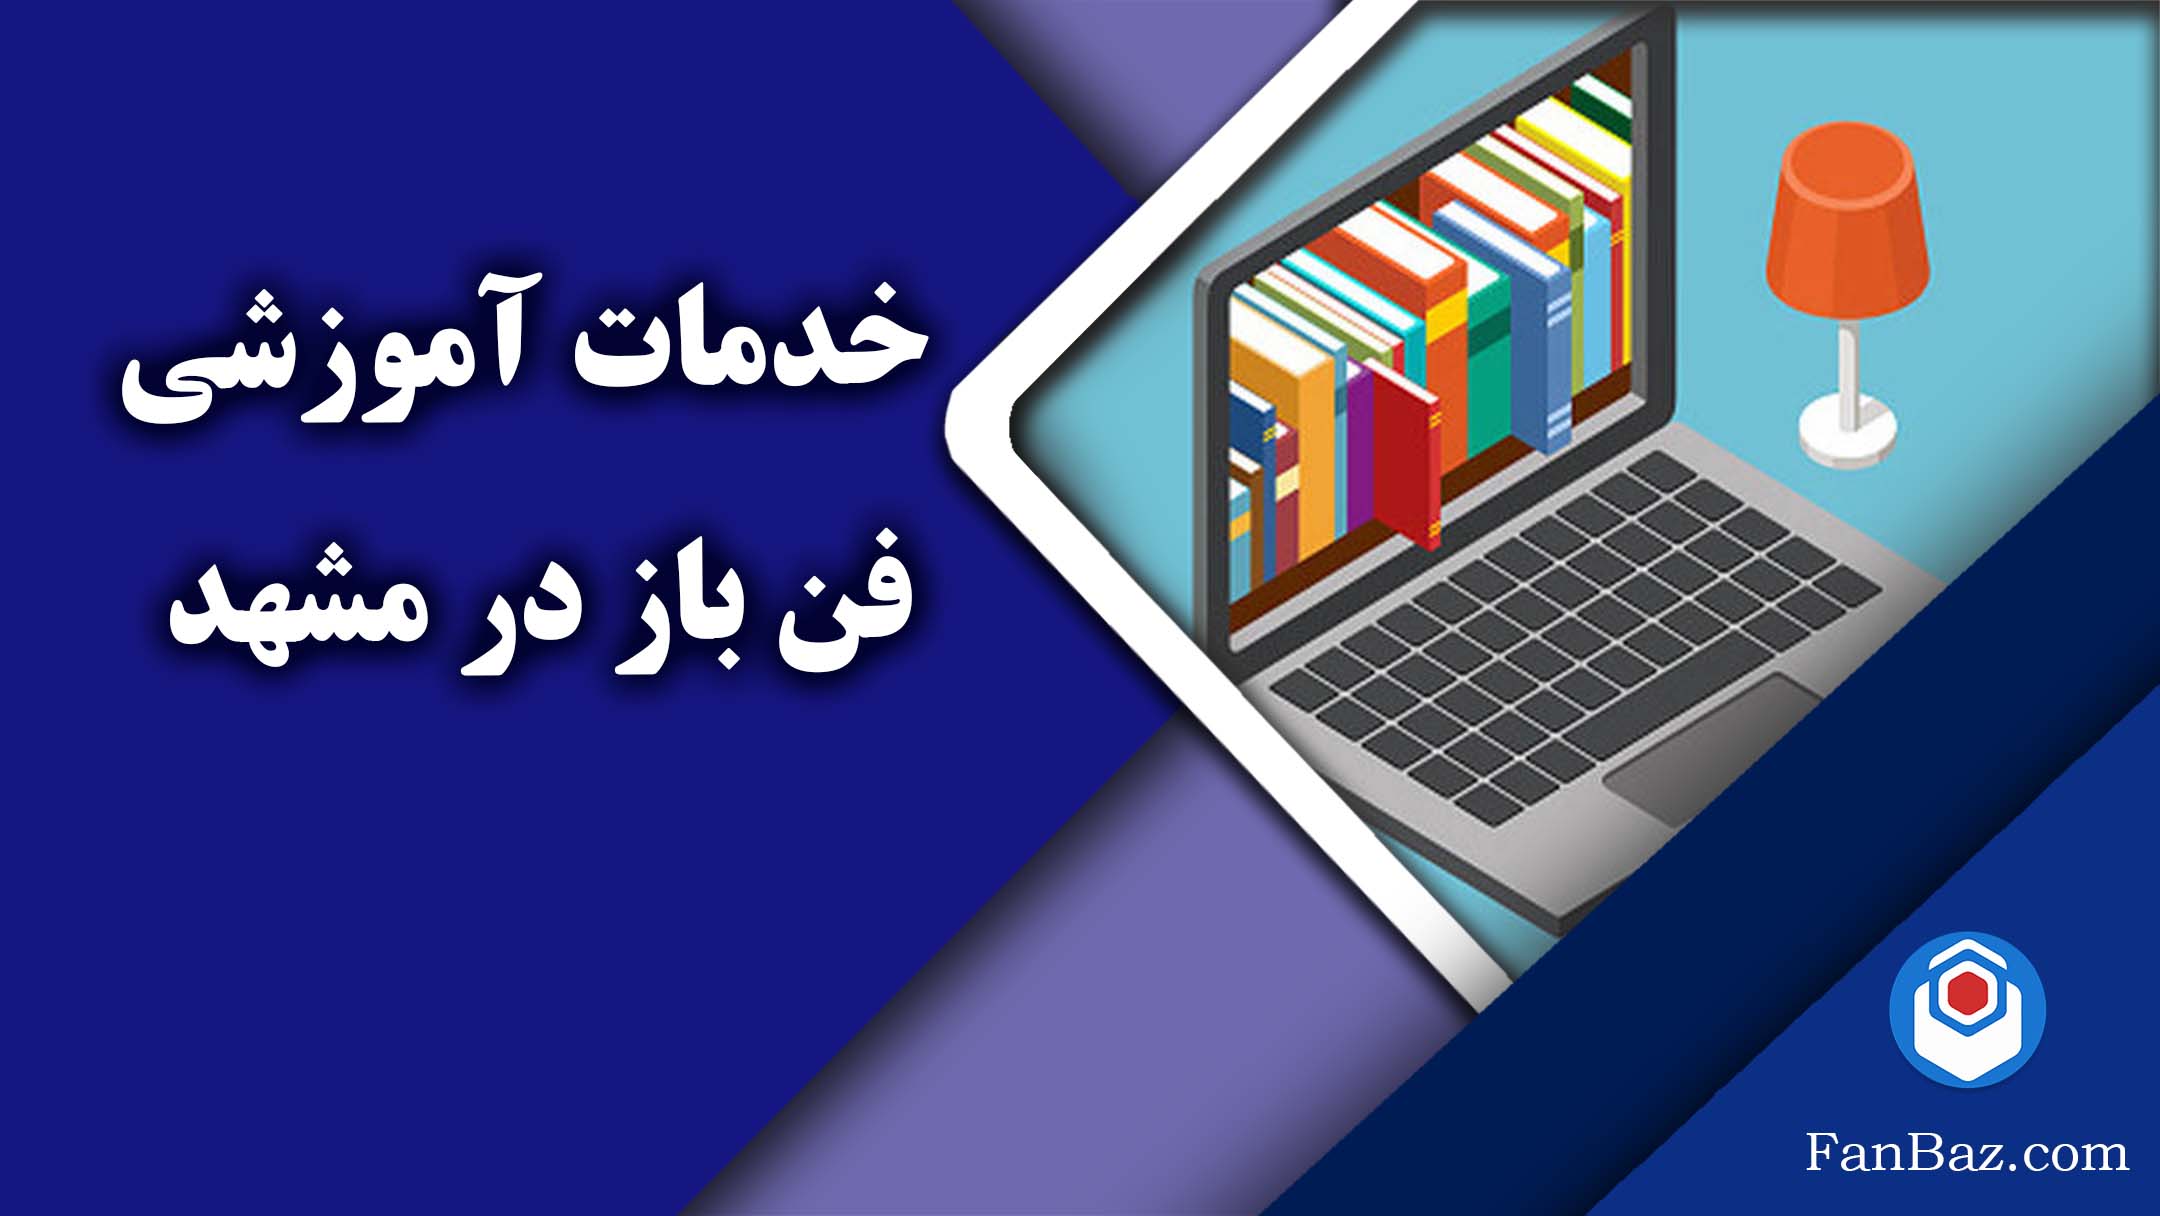 خدمات آموزشی فن باز در مشهد